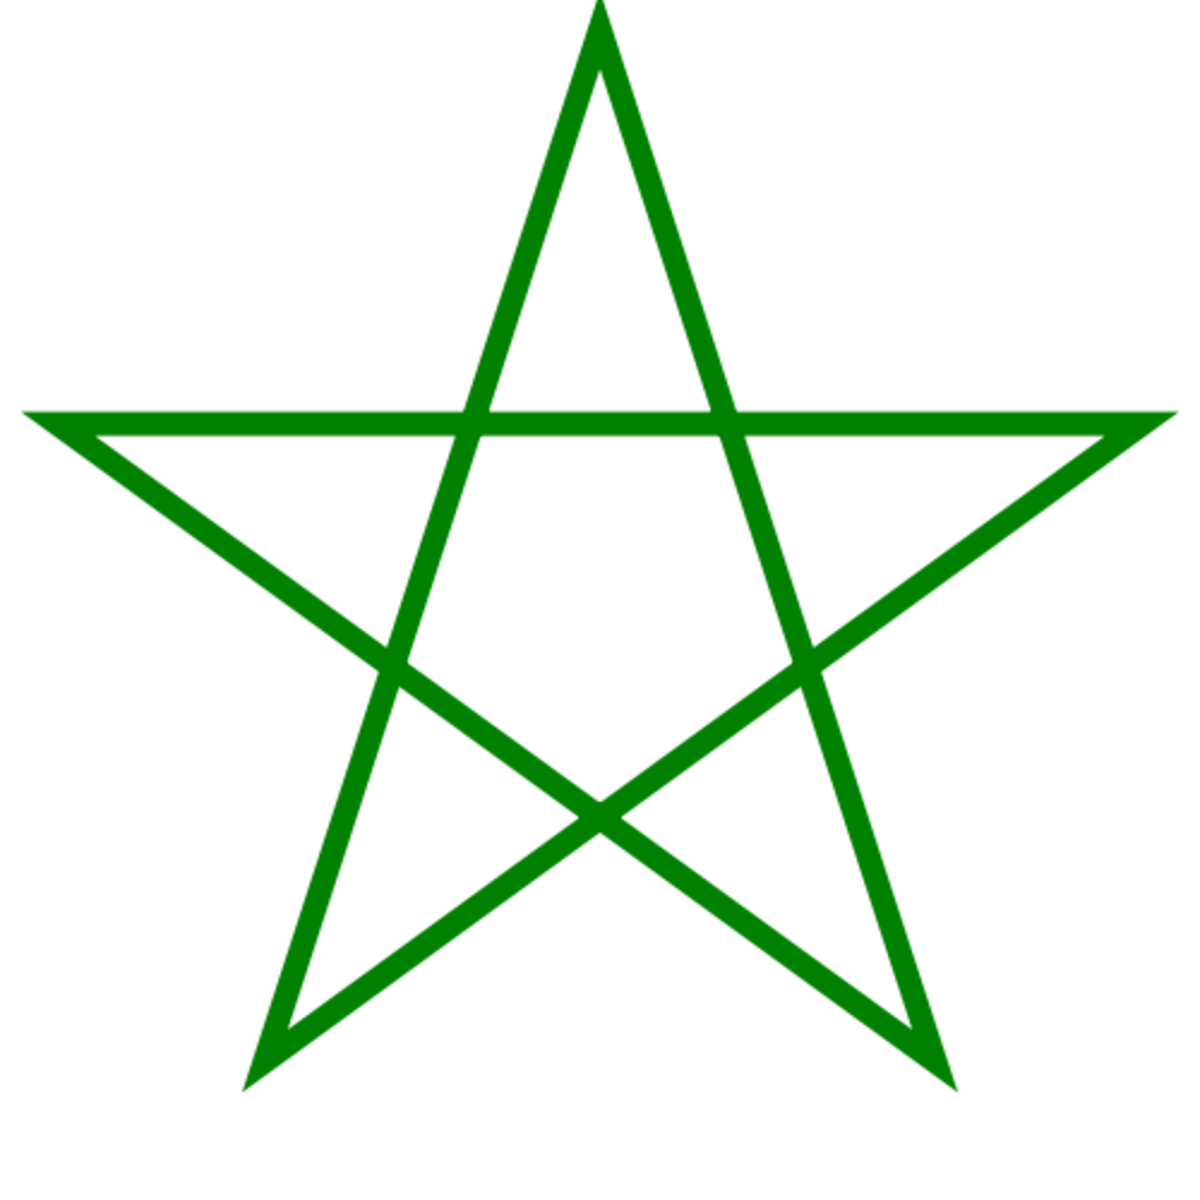 Hình vẽ ngôi sao năm cánh: Hình vẽ ngôi sao năm cánh là biểu tượng của sự hoàn hảo và sáng tạo. Hãy cùng xem hình ảnh để cảm nhận được sự đồng nhất và hài hòa của một hình vẽ ngôi sao năm cánh.